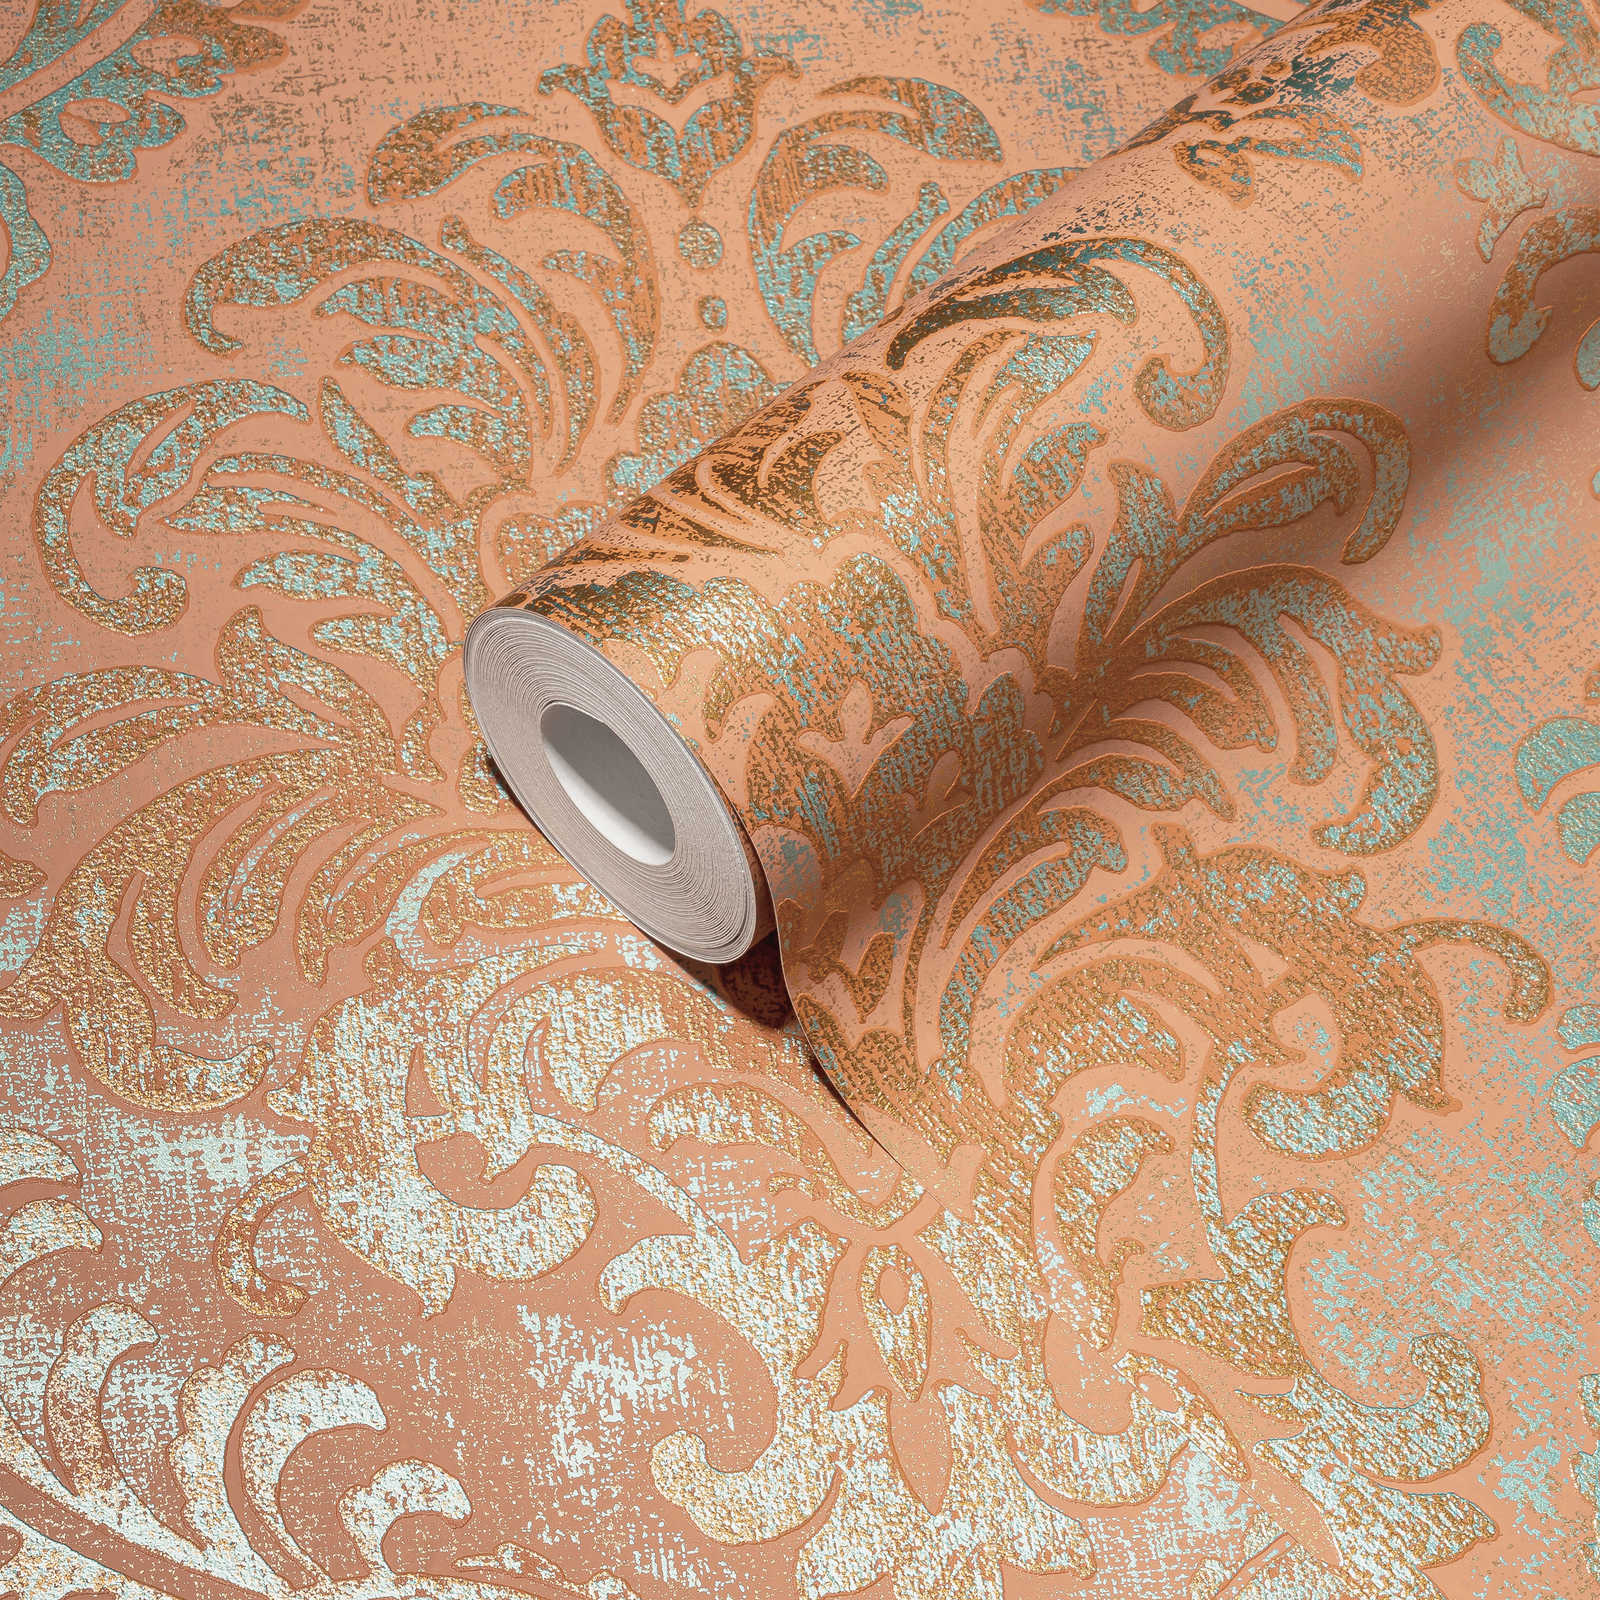             Papier peint intissé aspect métallique avec ornement - orange, rose, turquoise
        